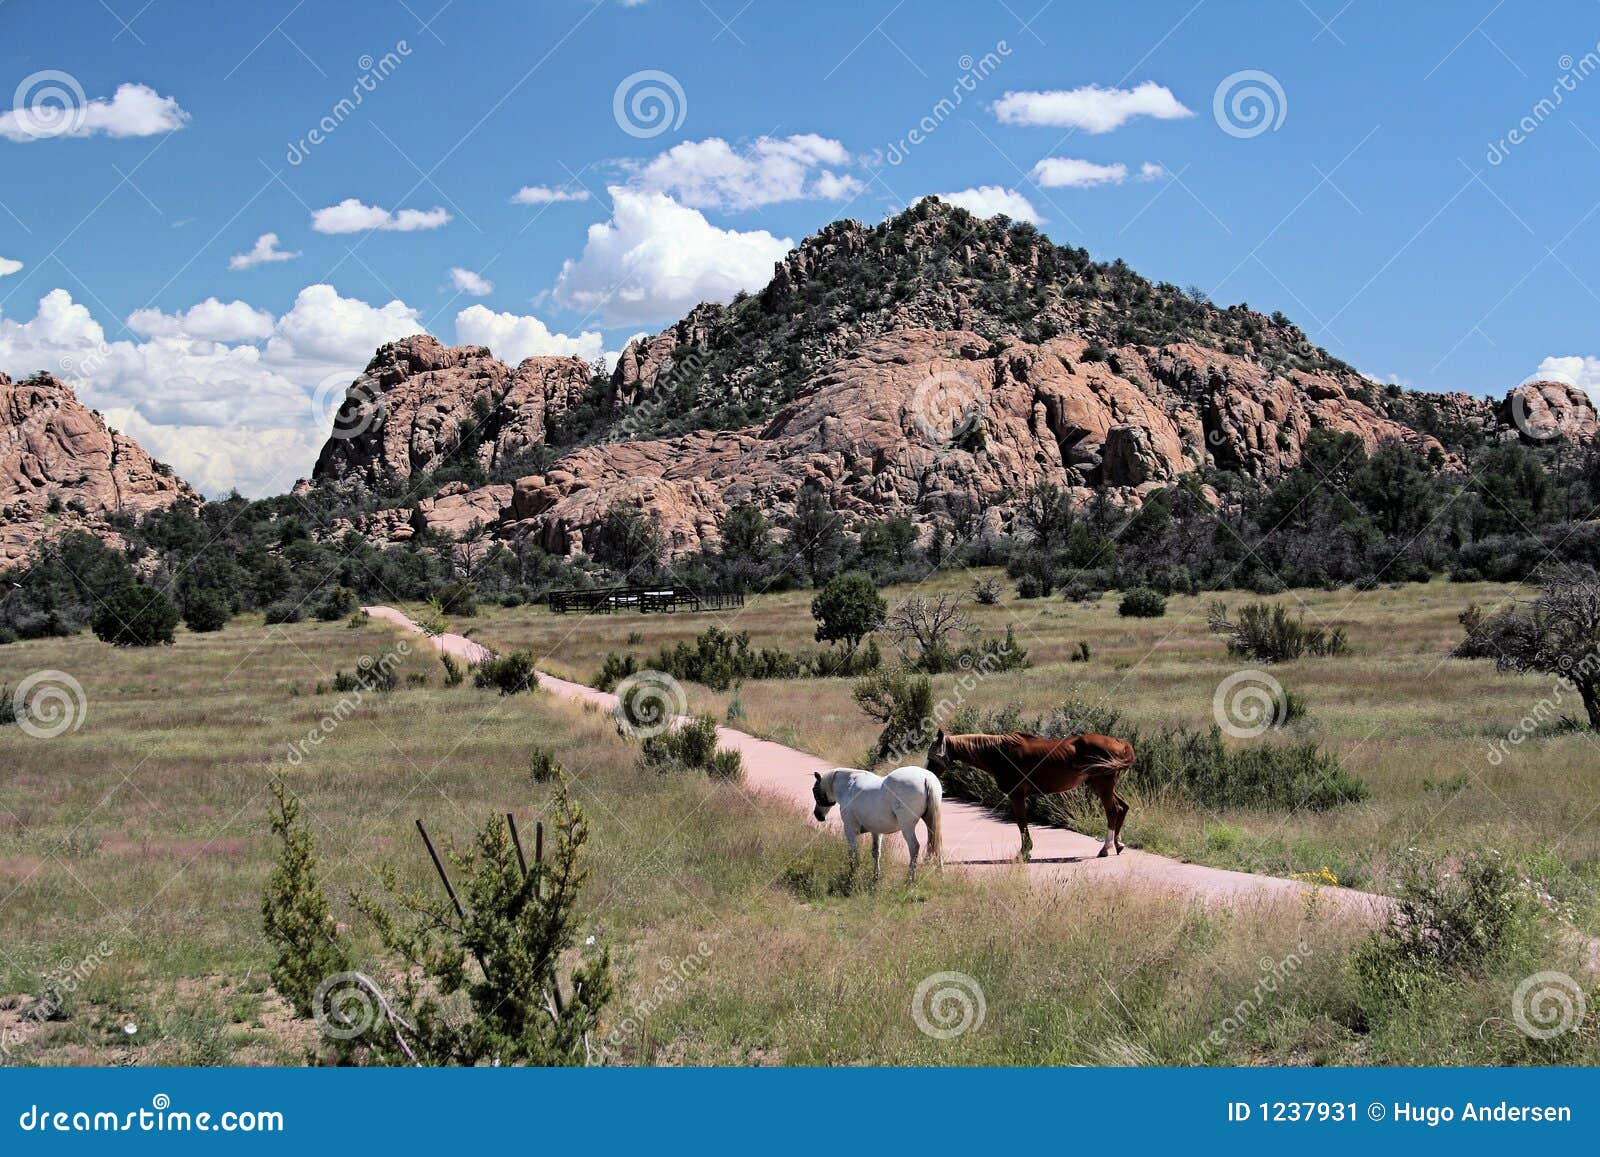 Arizona Horses stock image. Image of horses, blue, trees - 1237931